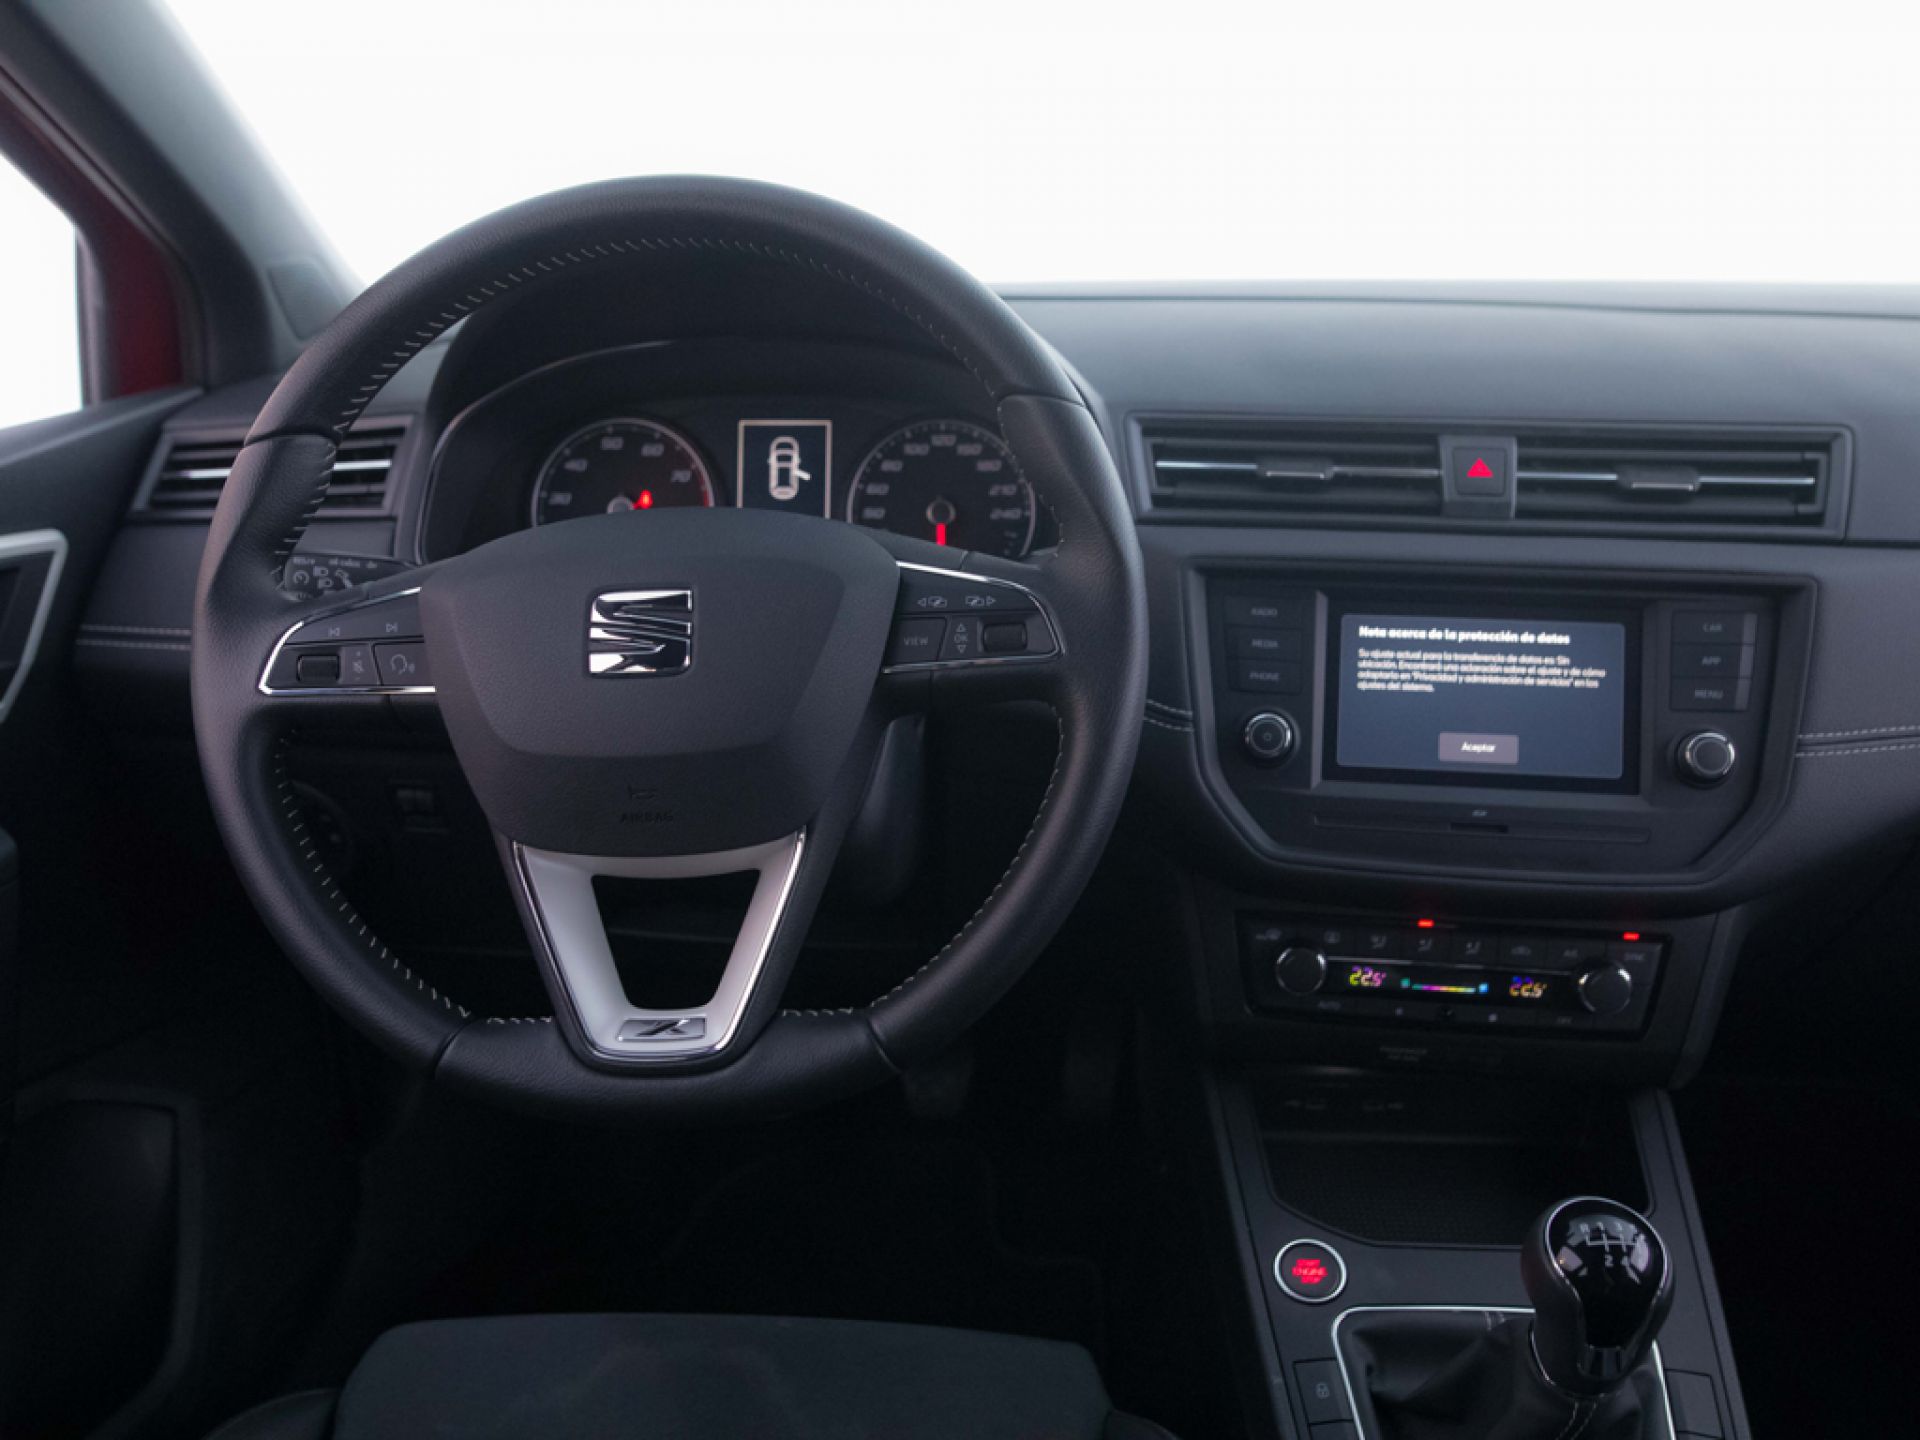 SEAT Ibiza 1.0 TGI (90CV) Xcellence